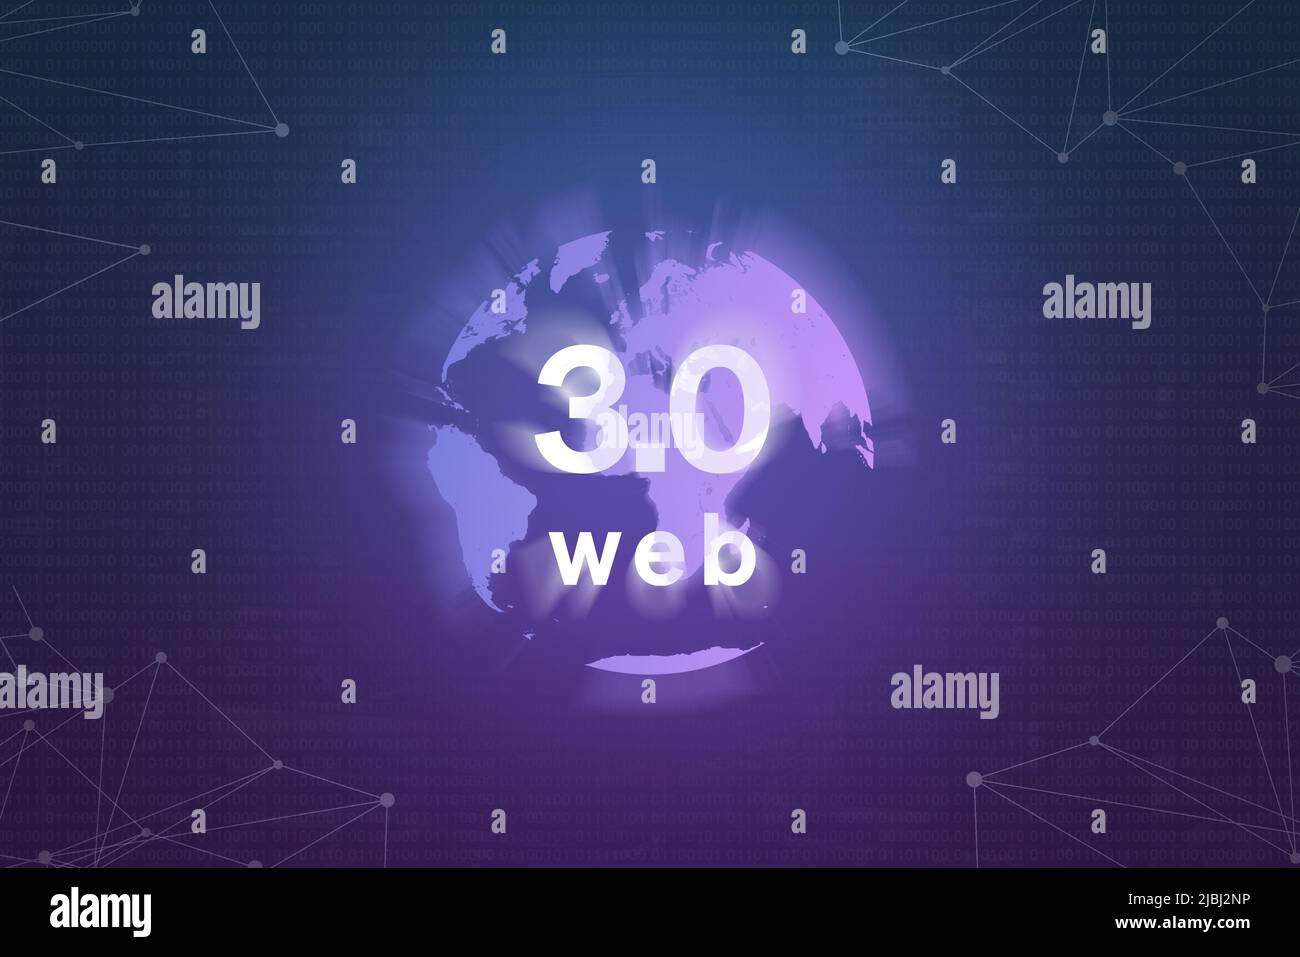 World Wide Web 3,0 basado en tecnología de blockchain e ilustración del concepto de tierra sobre fondo morado con nodos de red Foto de stock